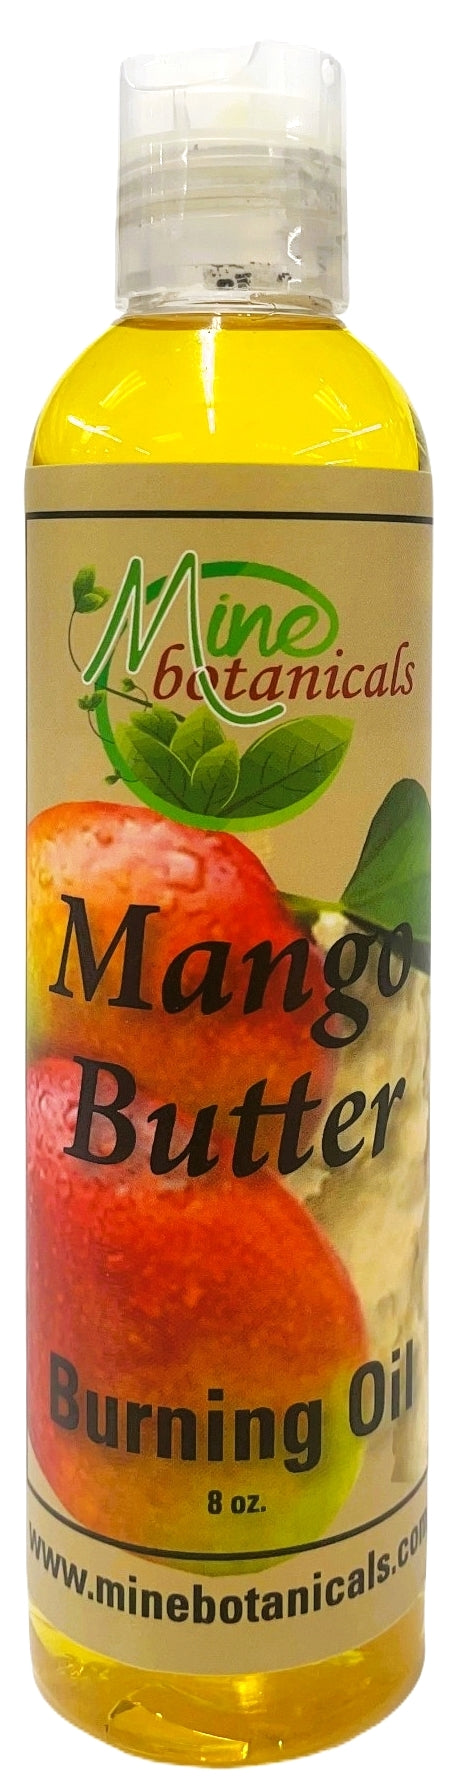 Mango Butter Burning oil 